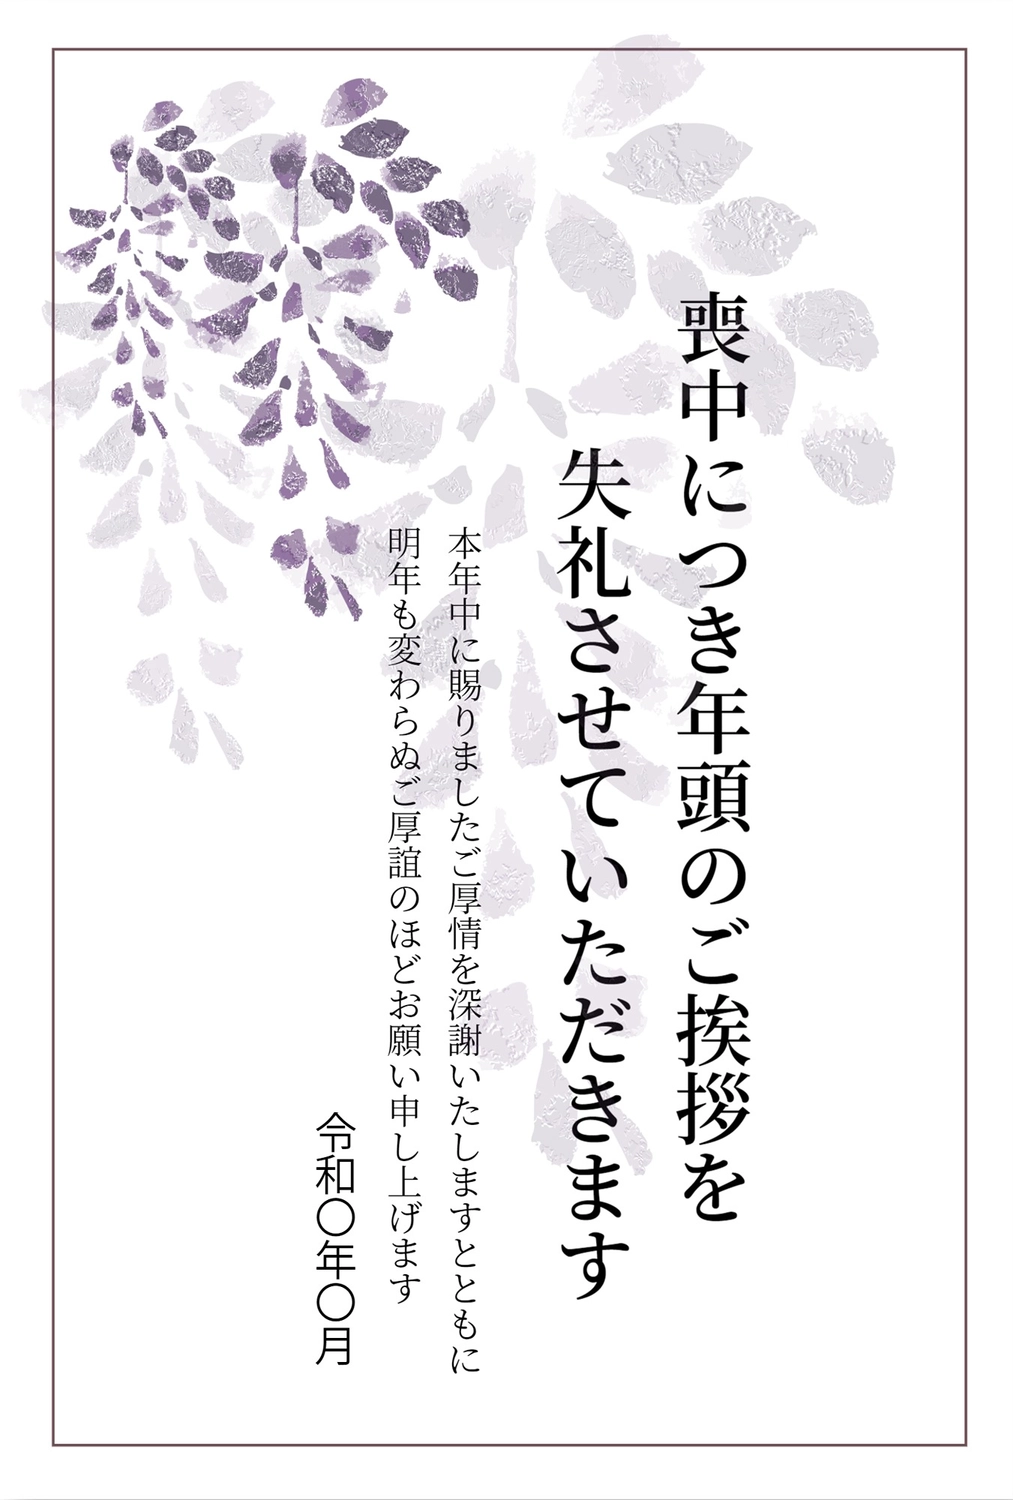 藤の喪中はがき, 藤, 紫の花, 永眠, 상중 엽서 템플릿